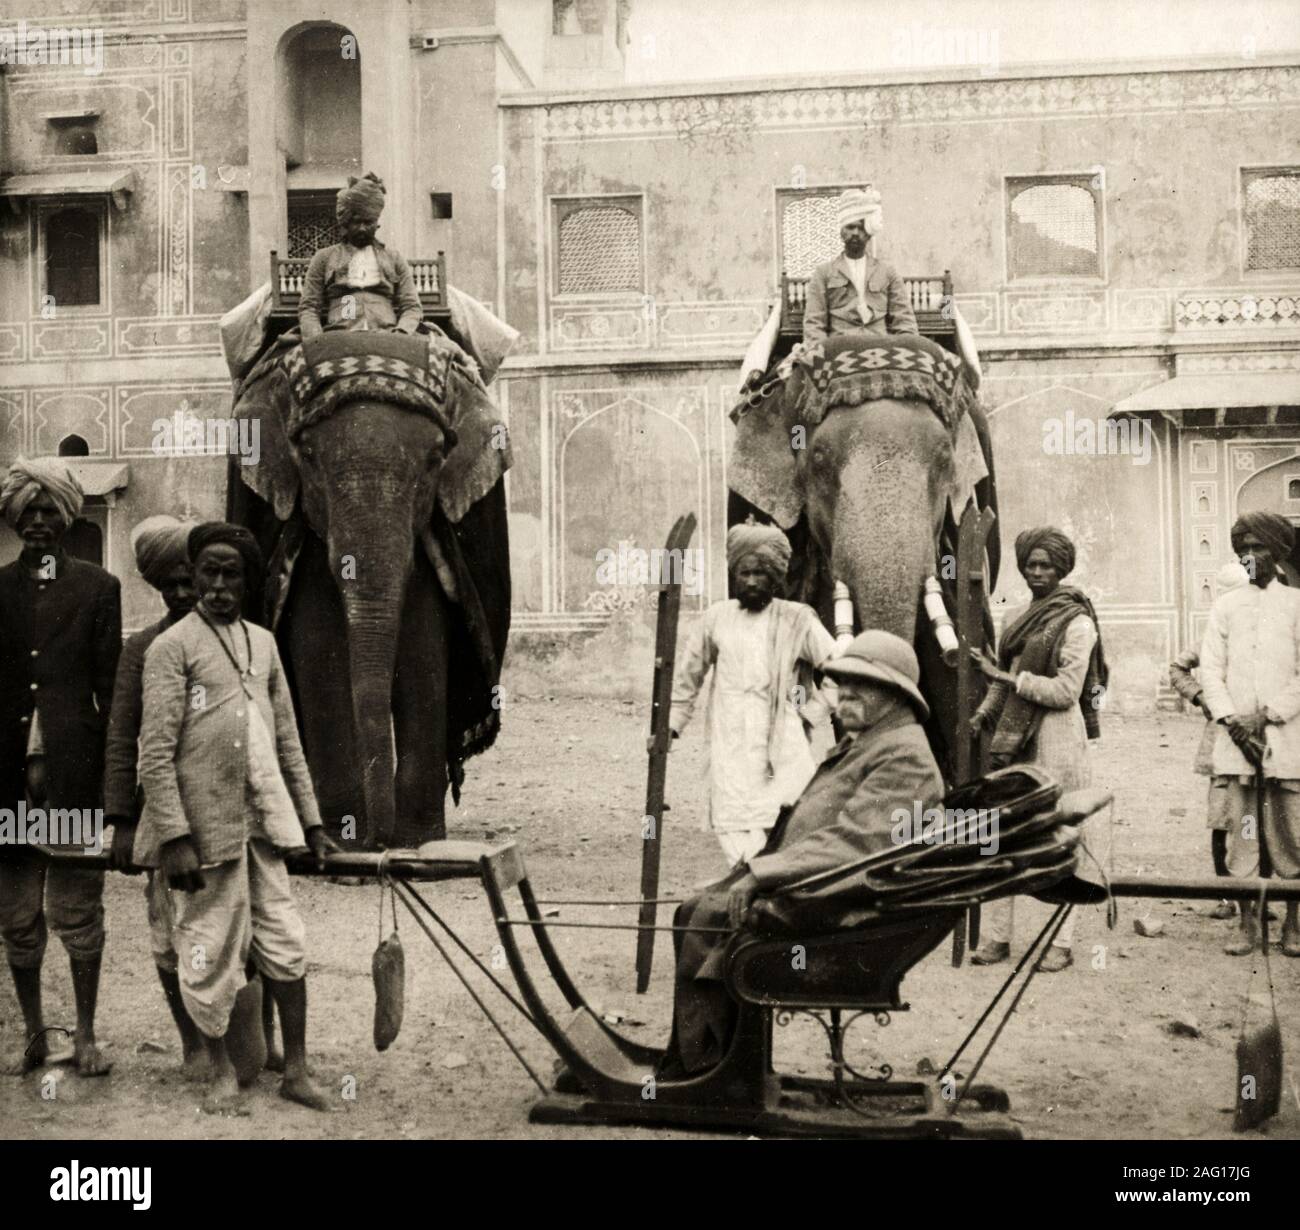 Au début du xxe siècle vintage photographie de presse - les éléphants de cérémonie avec howdah et mahout, avec un européen dans un fauteuil et porteurs Banque D'Images